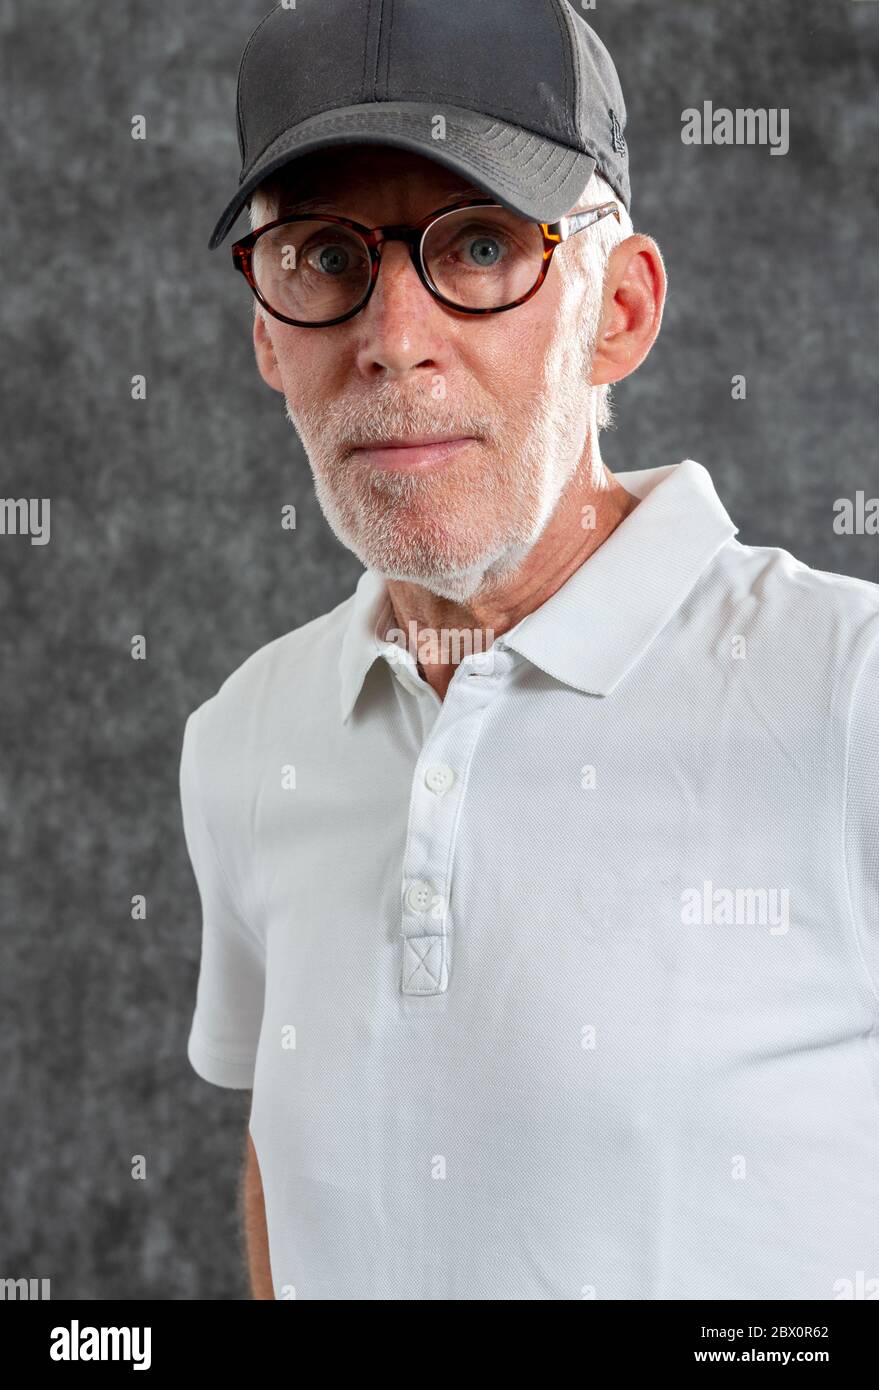 un homme de soixante ans portant une casquette de baseball Photo Stock -  Alamy